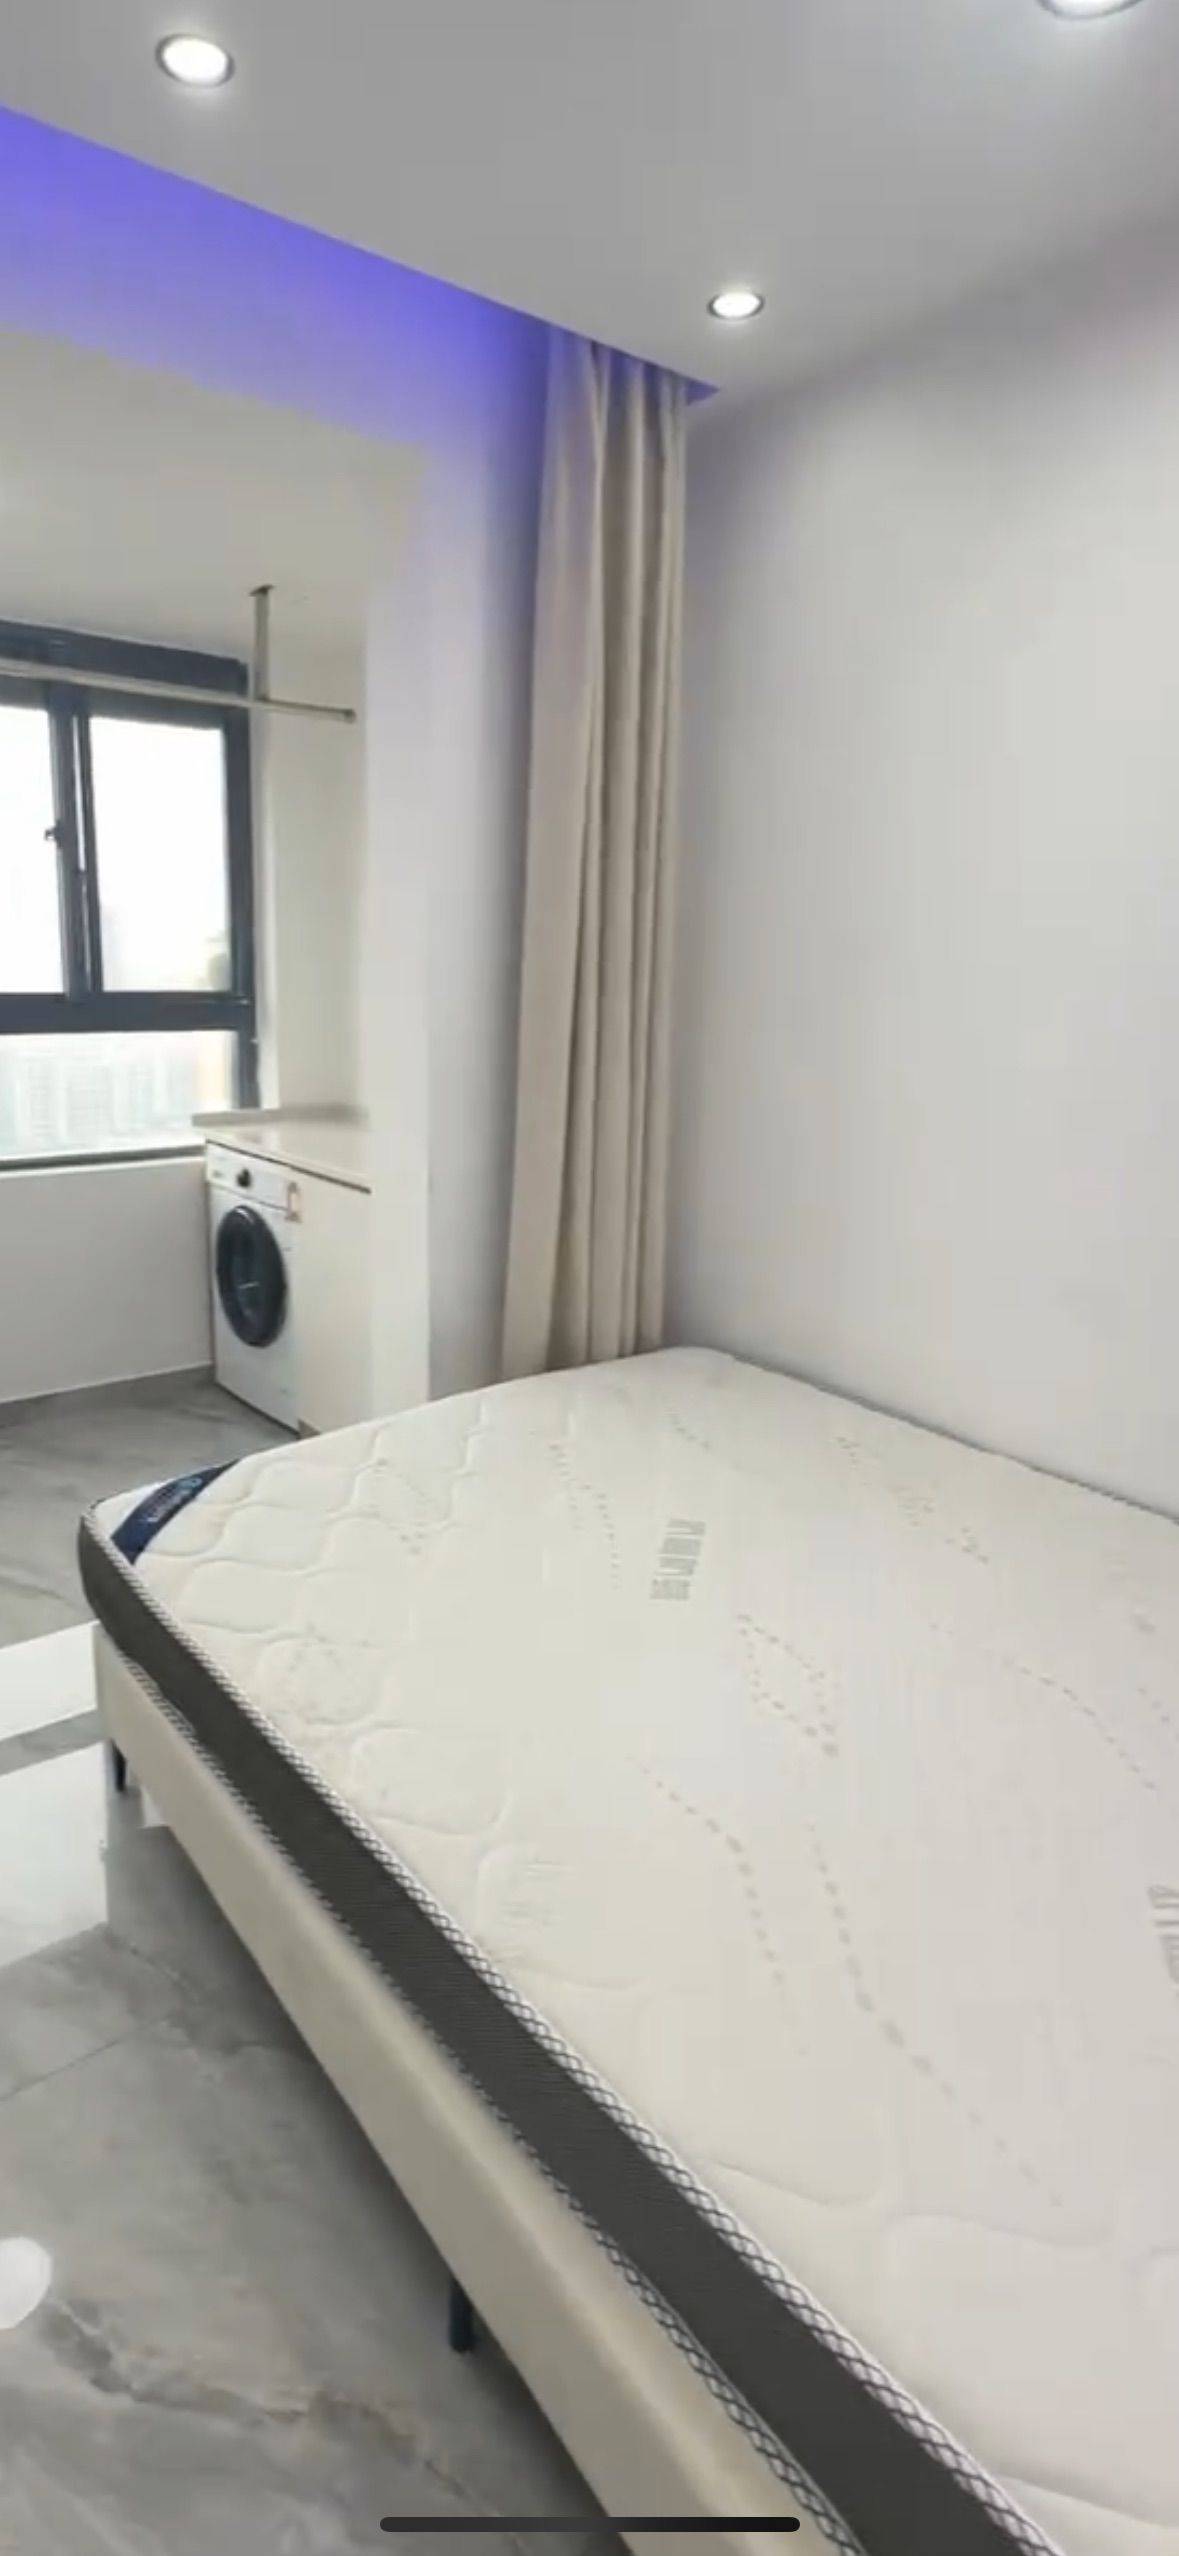 Suzhou-Huqiu-Cozy Home,Clean&Comfy,No Gender Limit